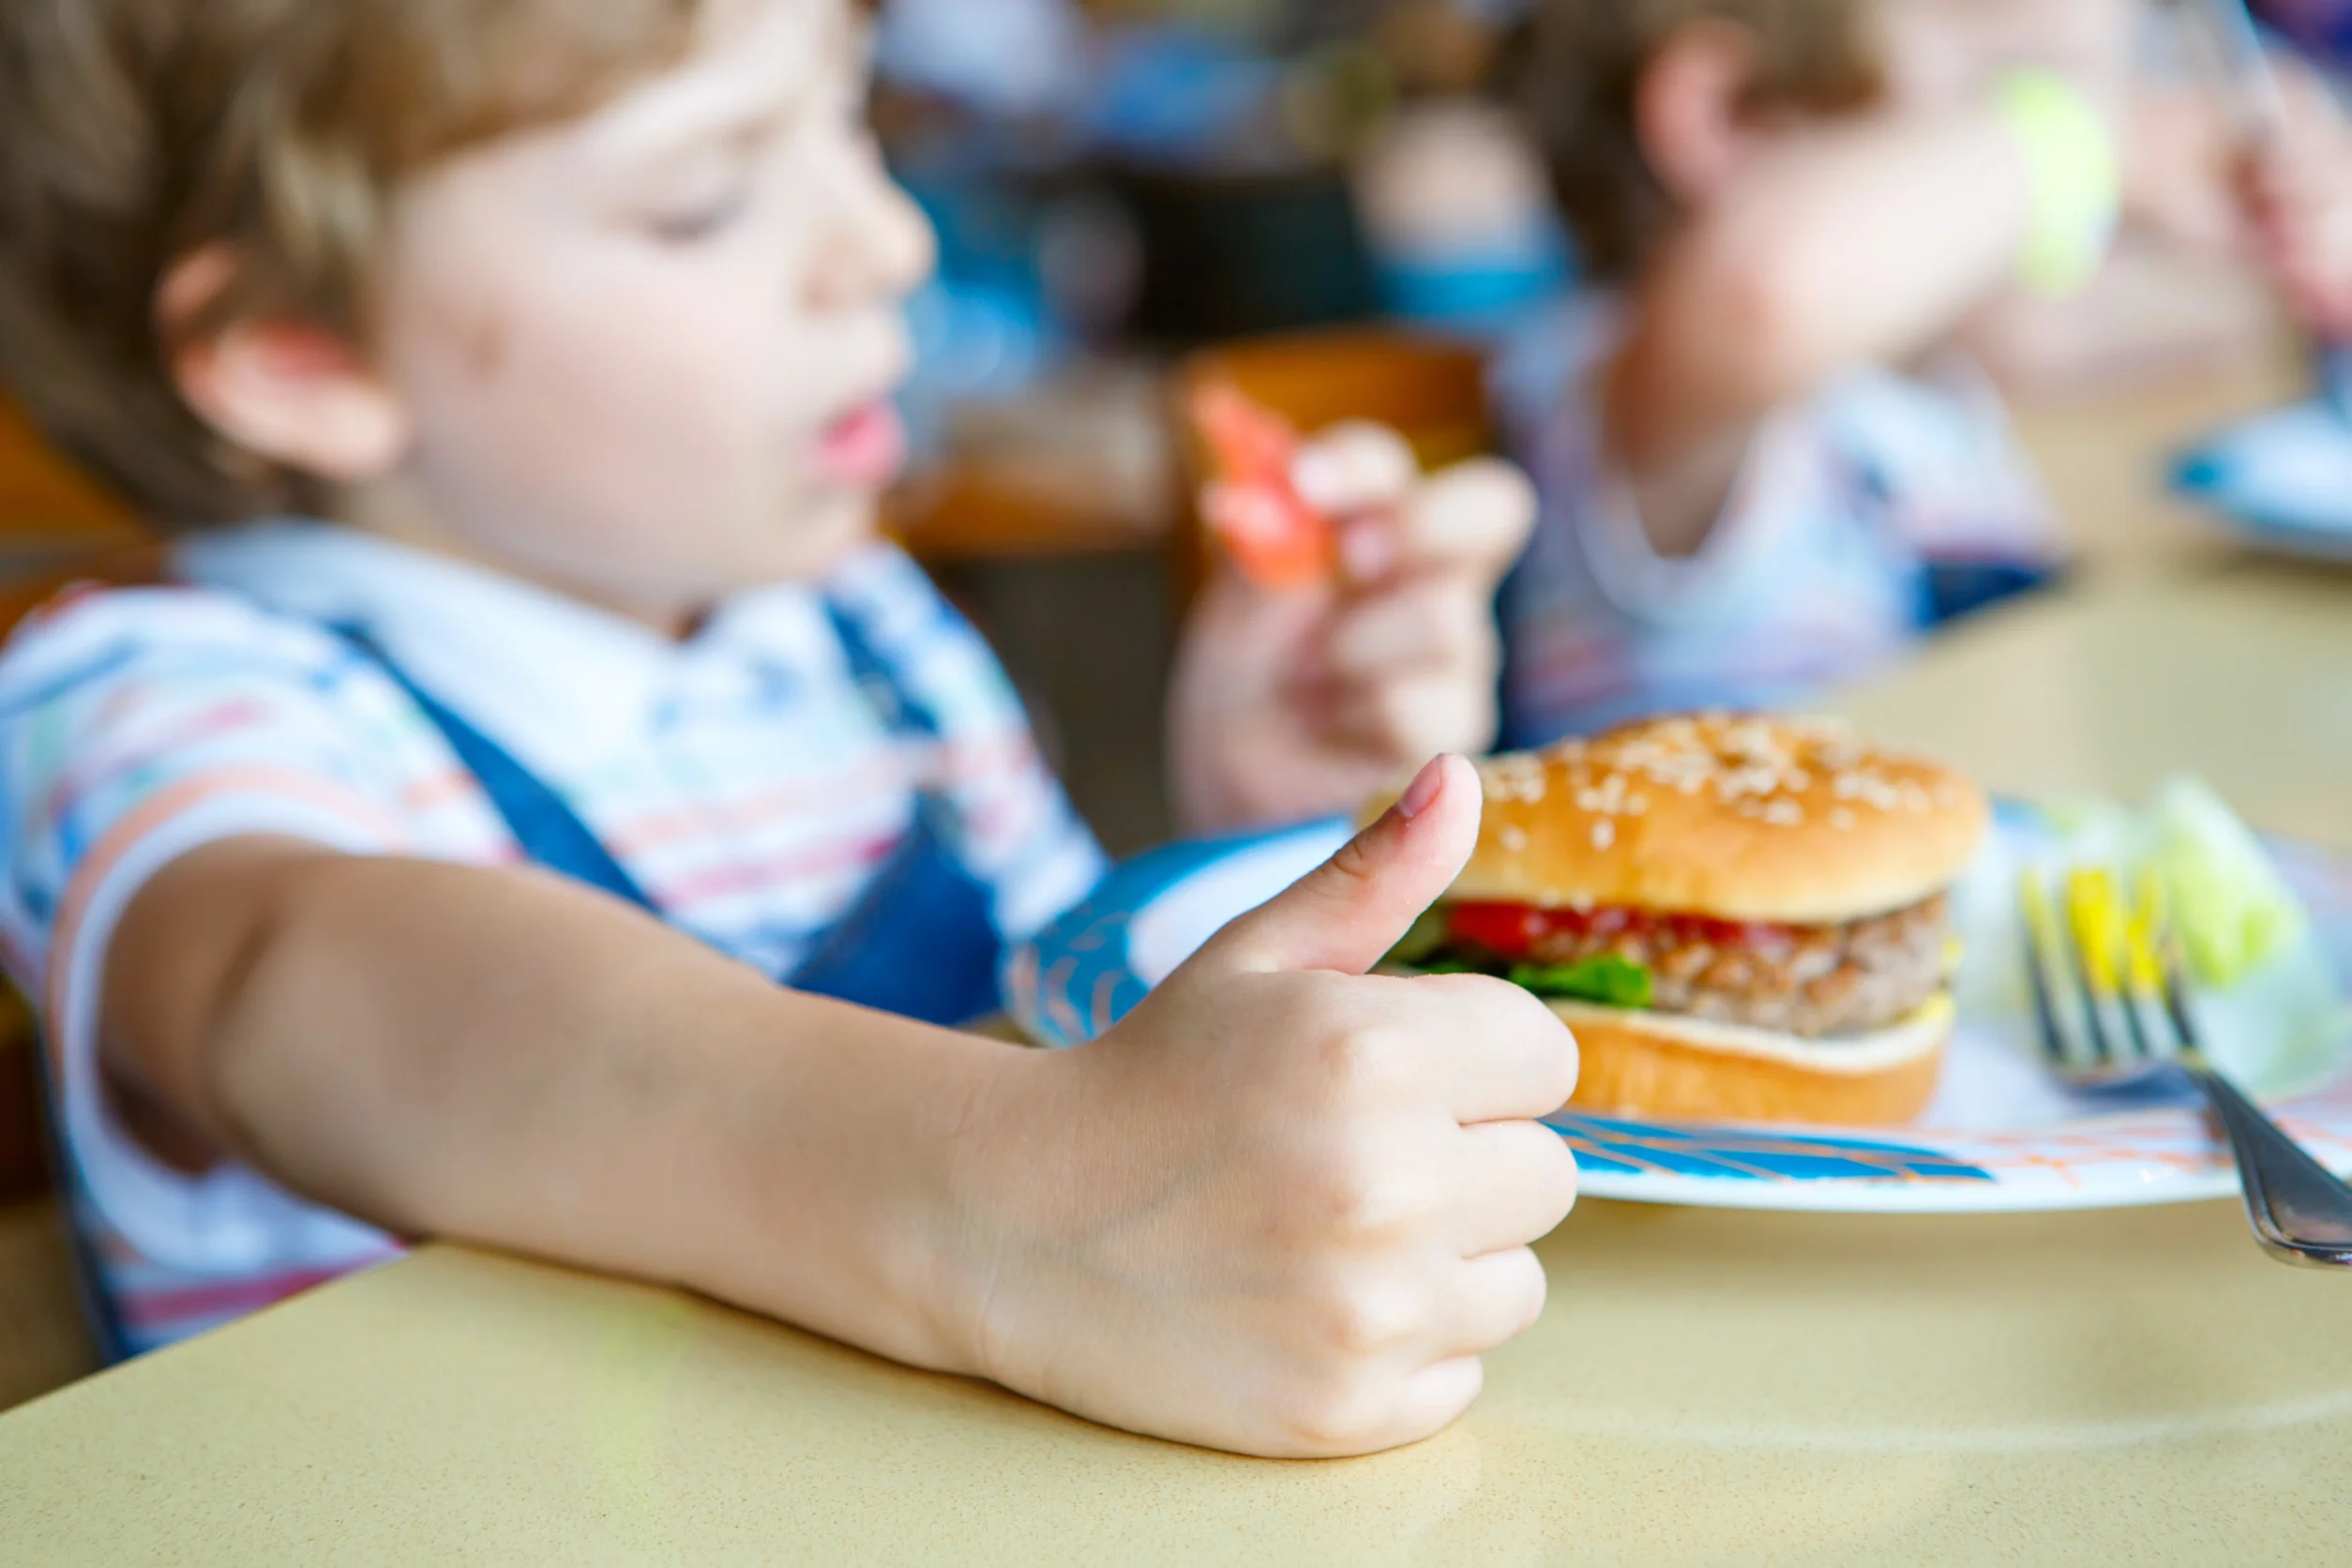 Denk je dat scholen genoeg doen om kinderen te informeren over gezond eten? 17